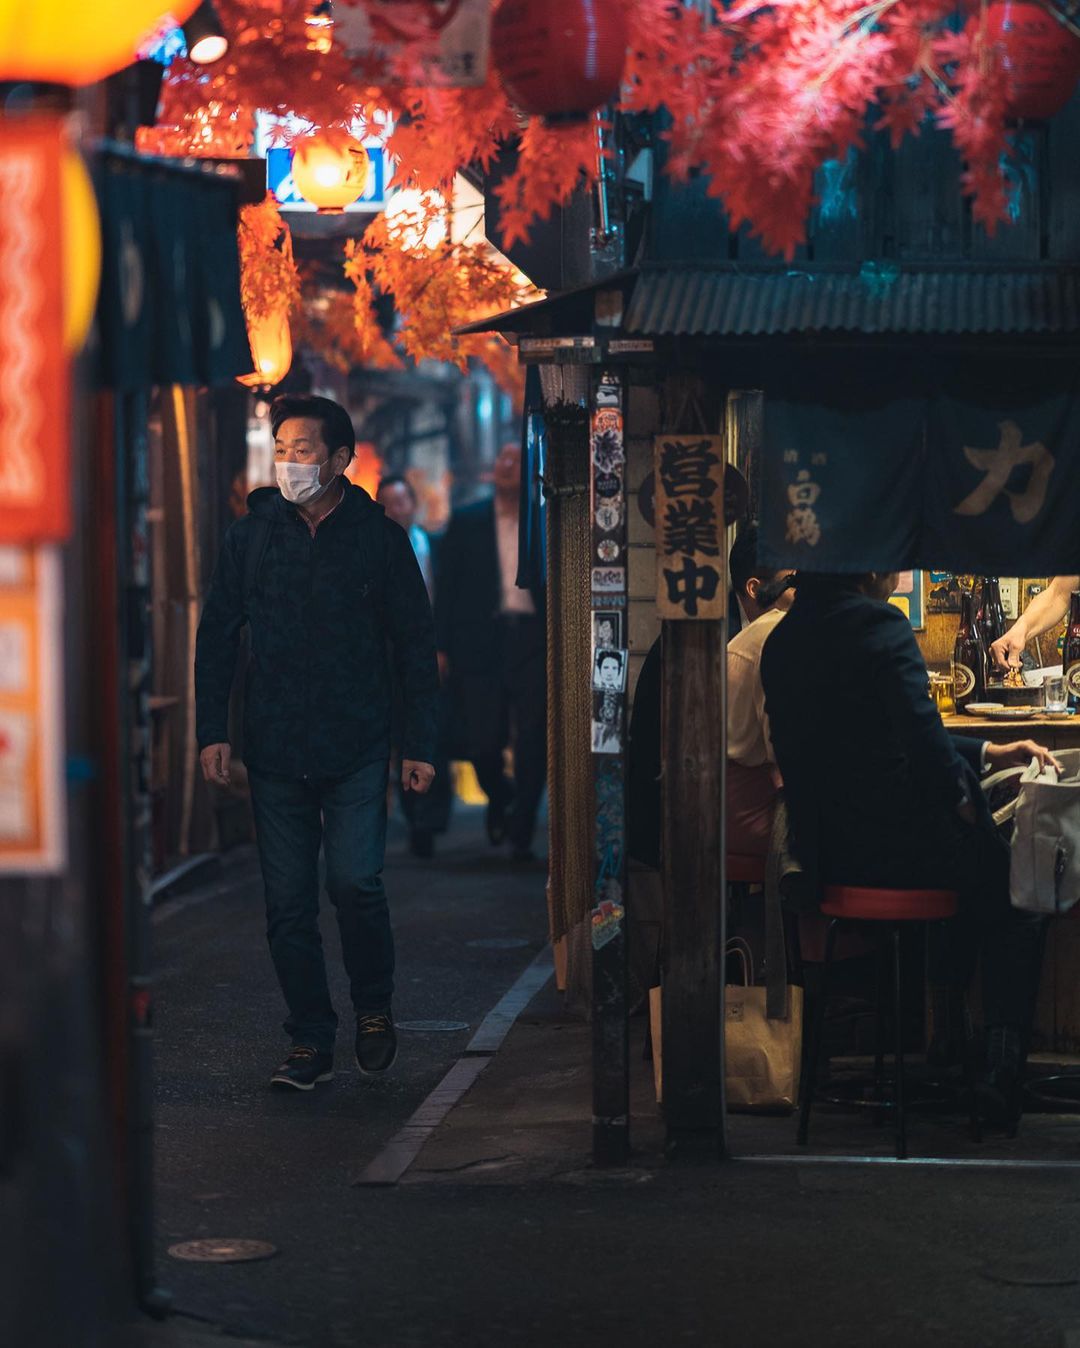 Непередаваемое очарование японских улиц на снимках Пэта Кея фотографии, фотограф, талантливый, более, в Instagram, делится, работами, Своими, пейзажи, уличные, захватывающие, запечатлел, Японию, посетил, недавно, городских, пейзажей, уличной, много, также